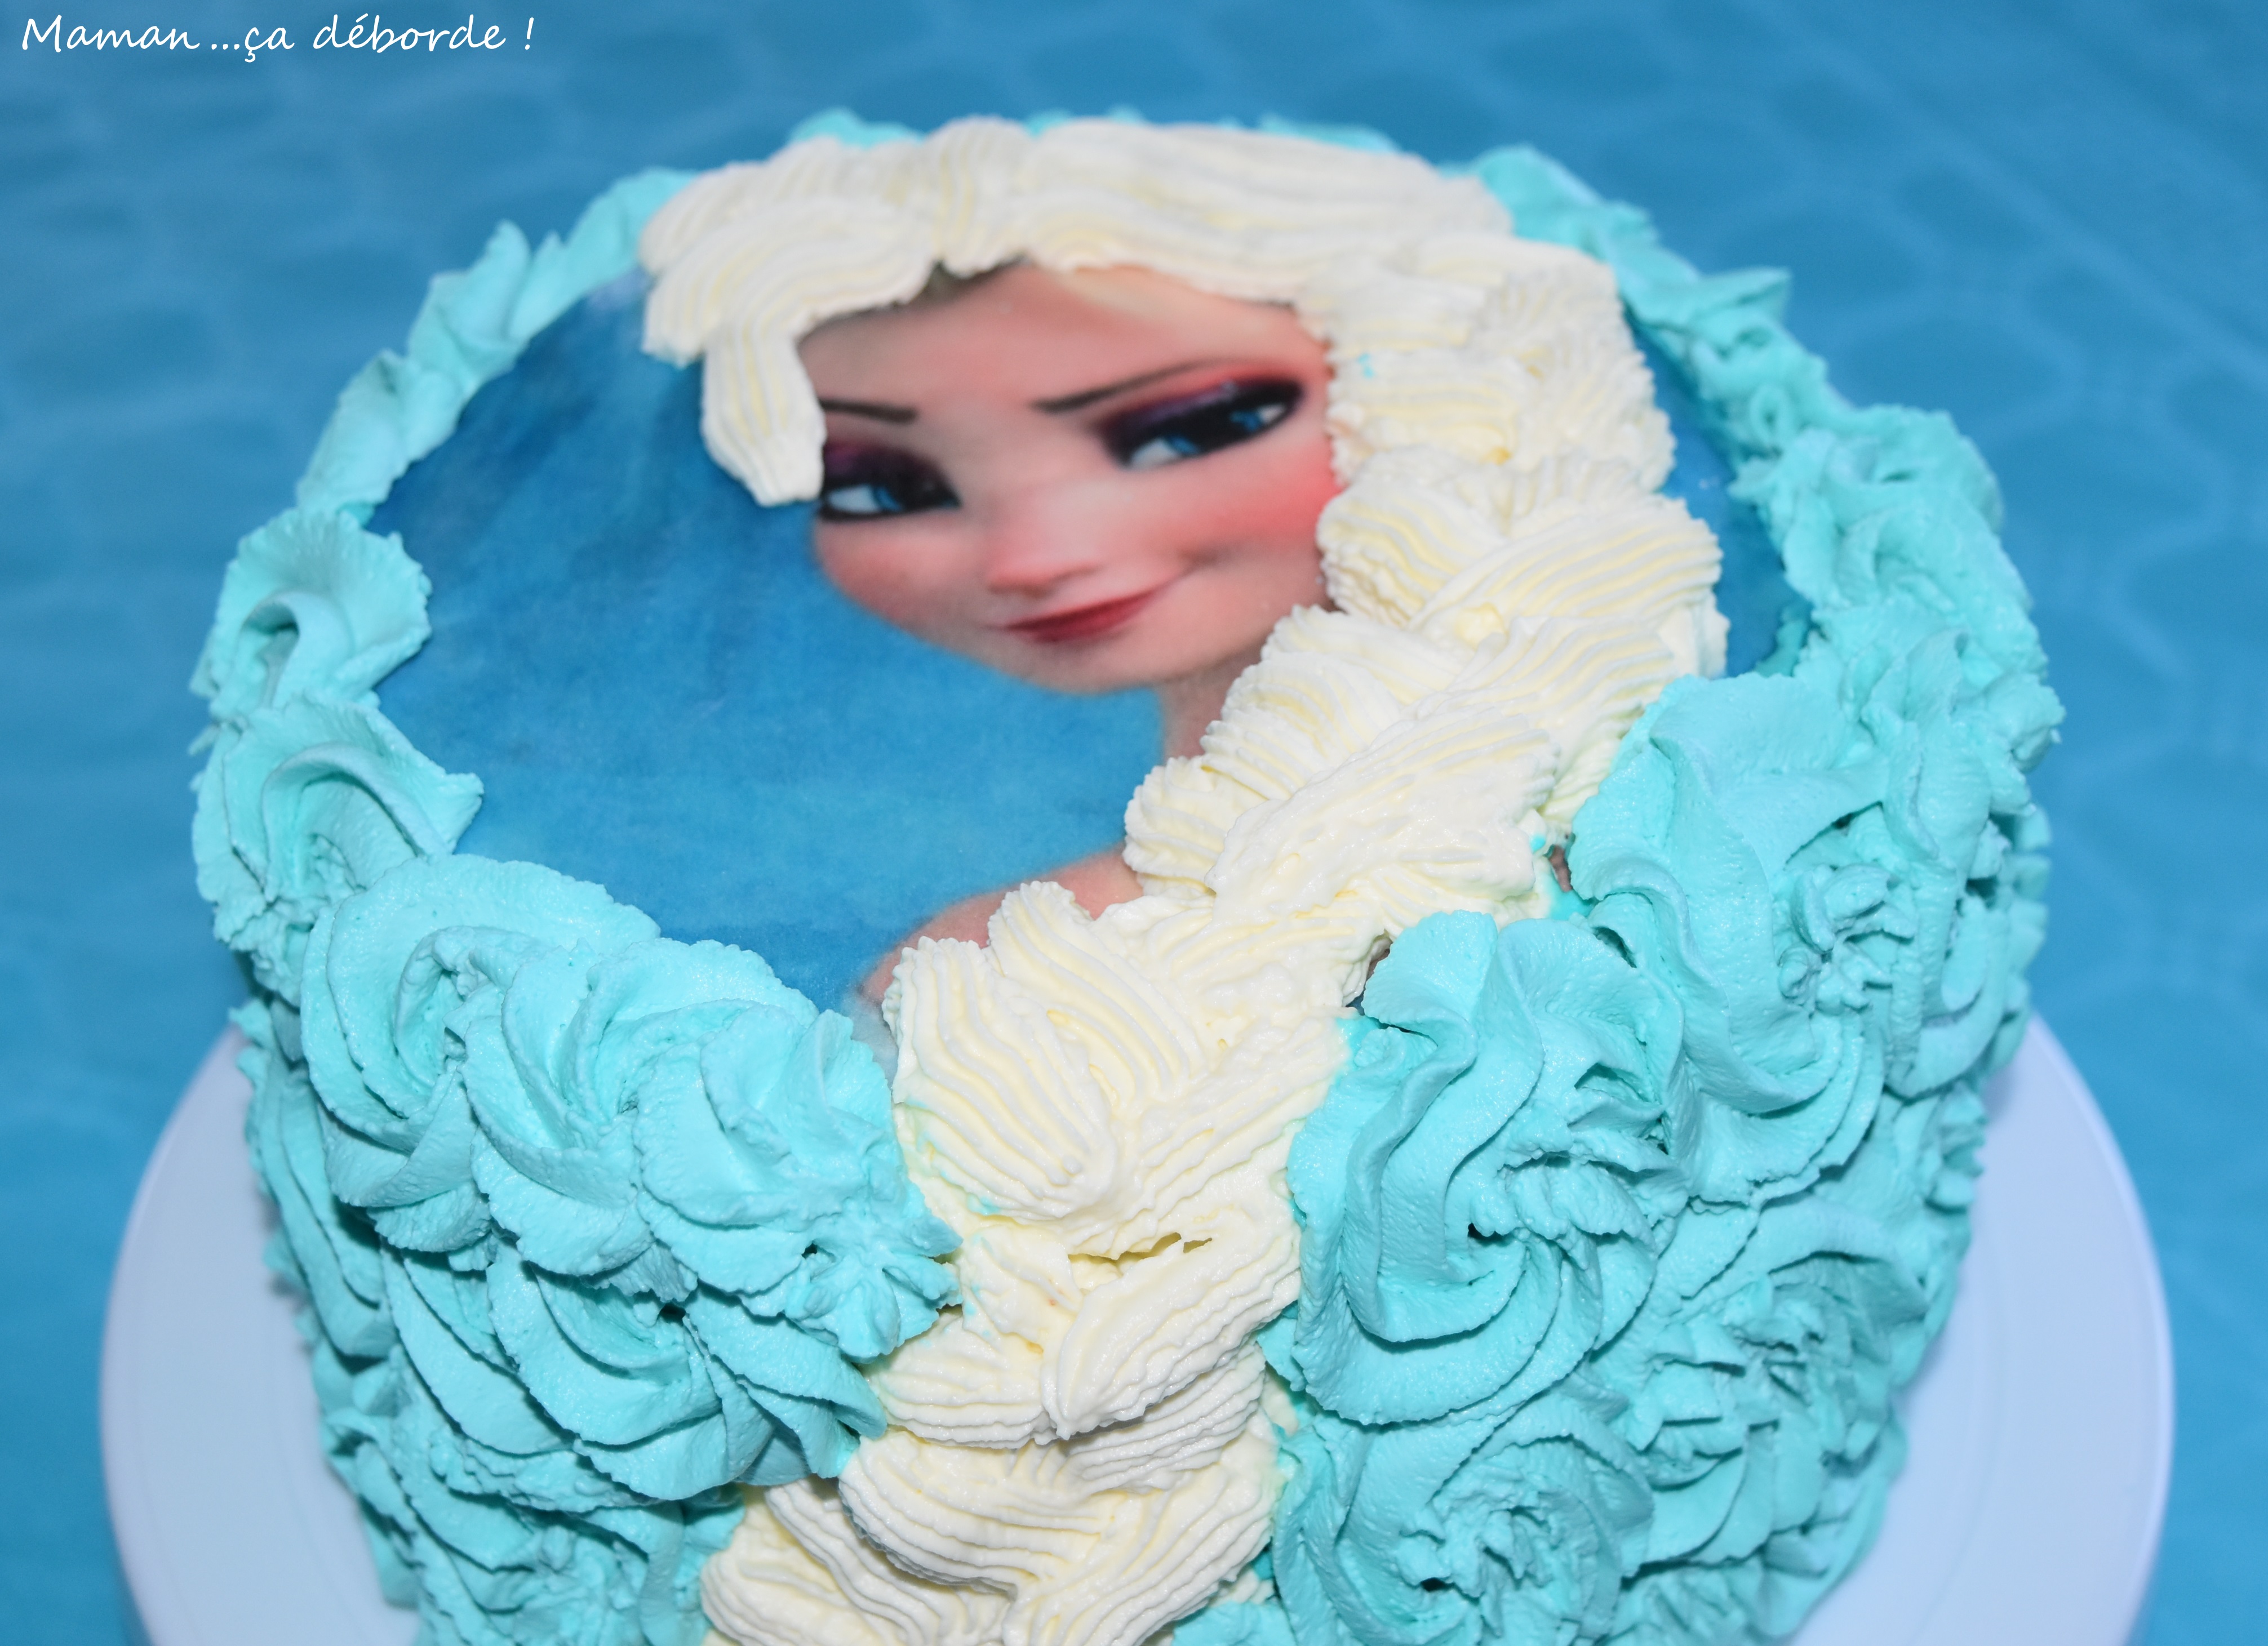 Gâteau Reine des neiges : 4 ans Clara - Quand est-ce qu'on mange?